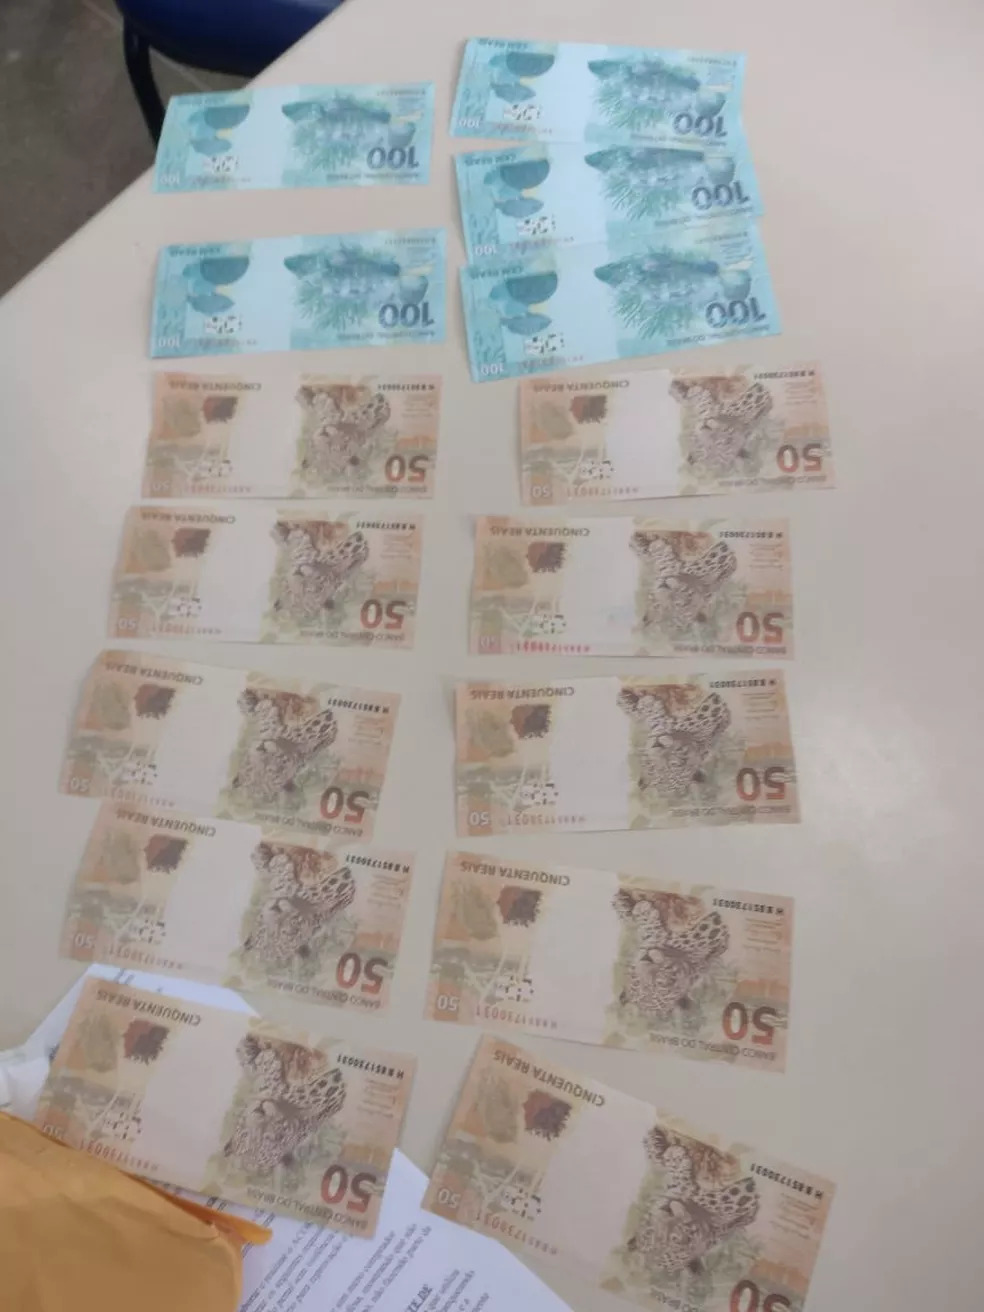 Homem é preso em flagrante com R$ 1 mil em notas falsas no sudoeste da BA